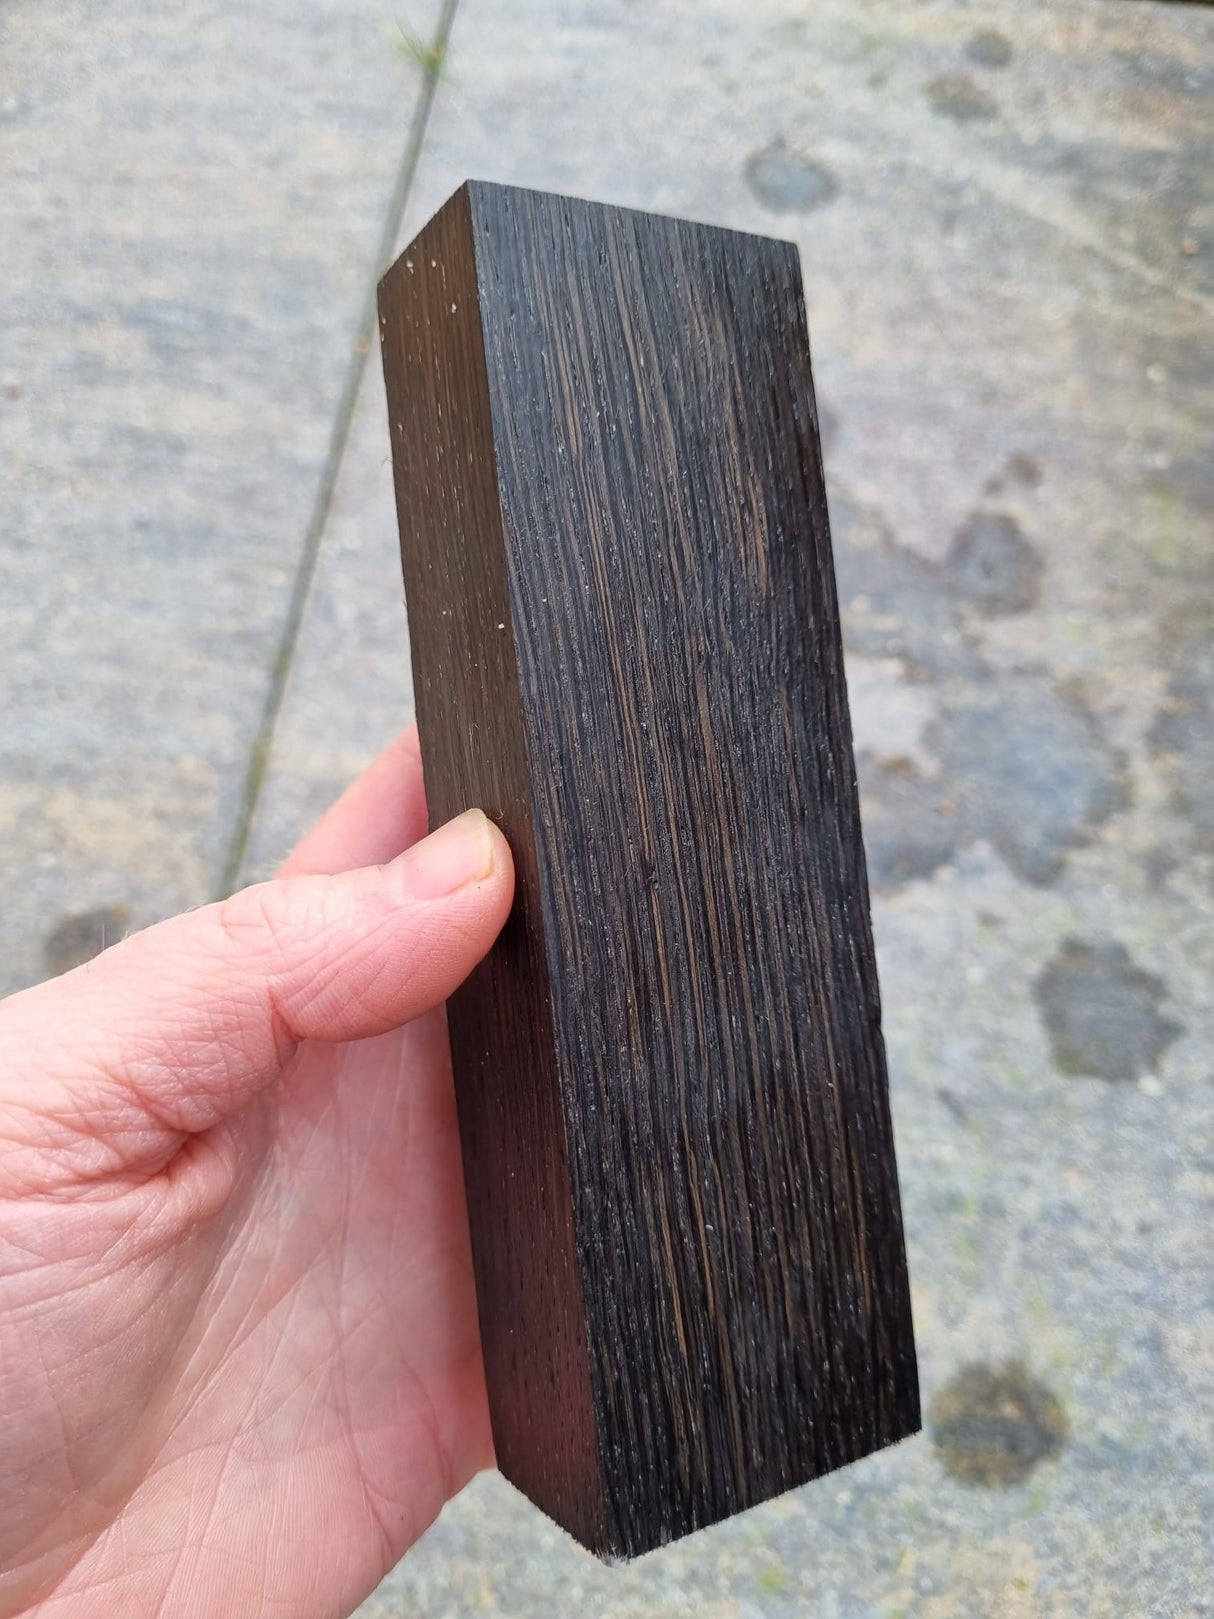 Stabilized bog oak knife block